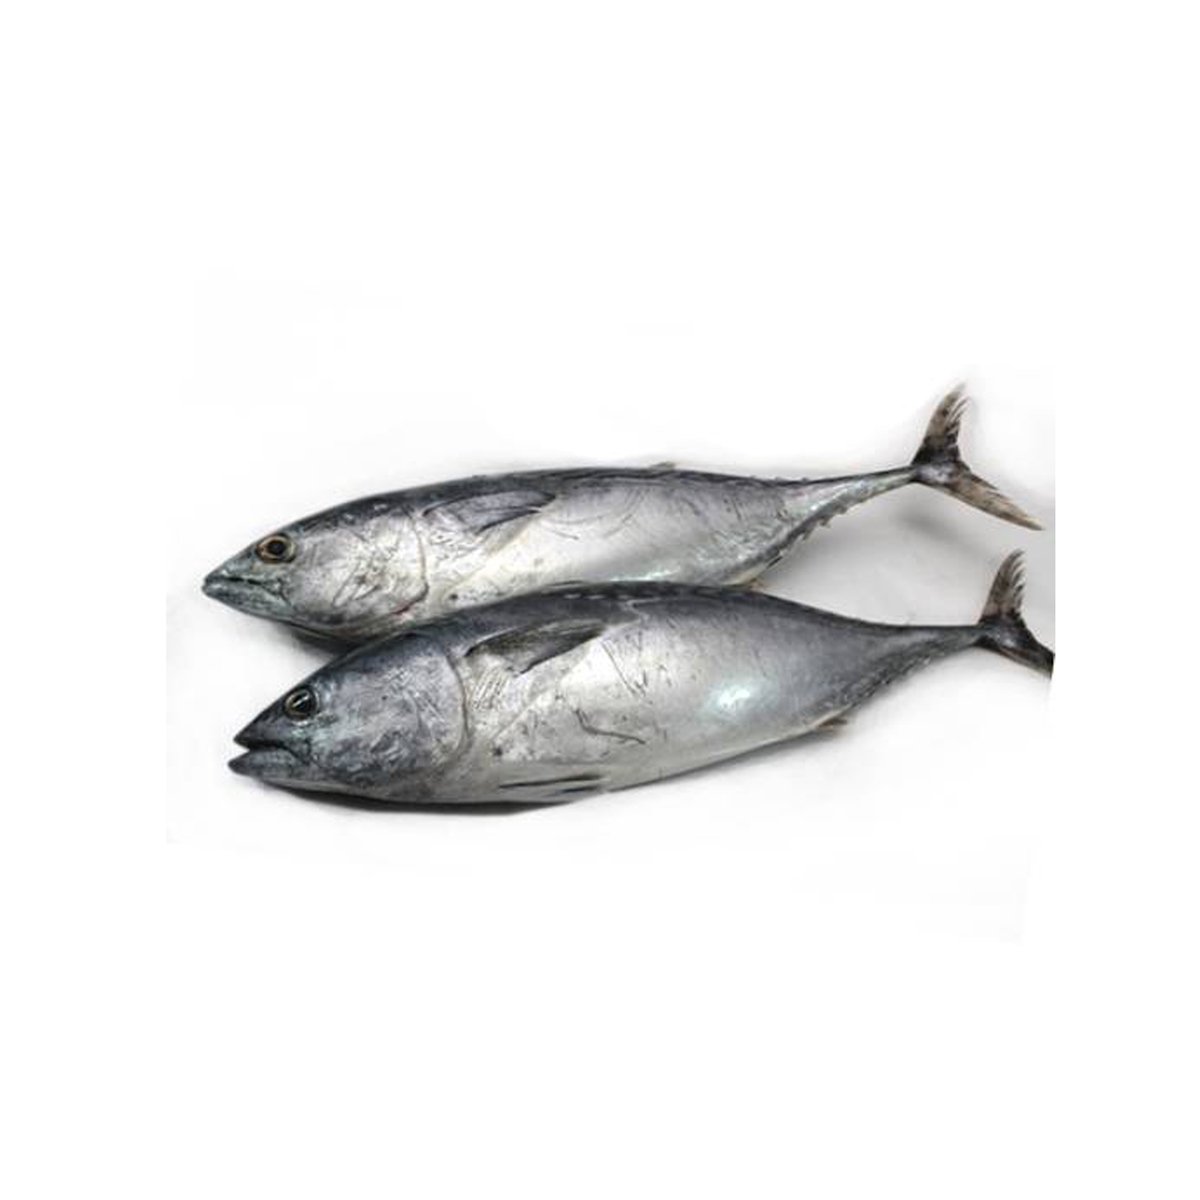 Ikan Tongkol(Little Tuna) 800g Approx Weight